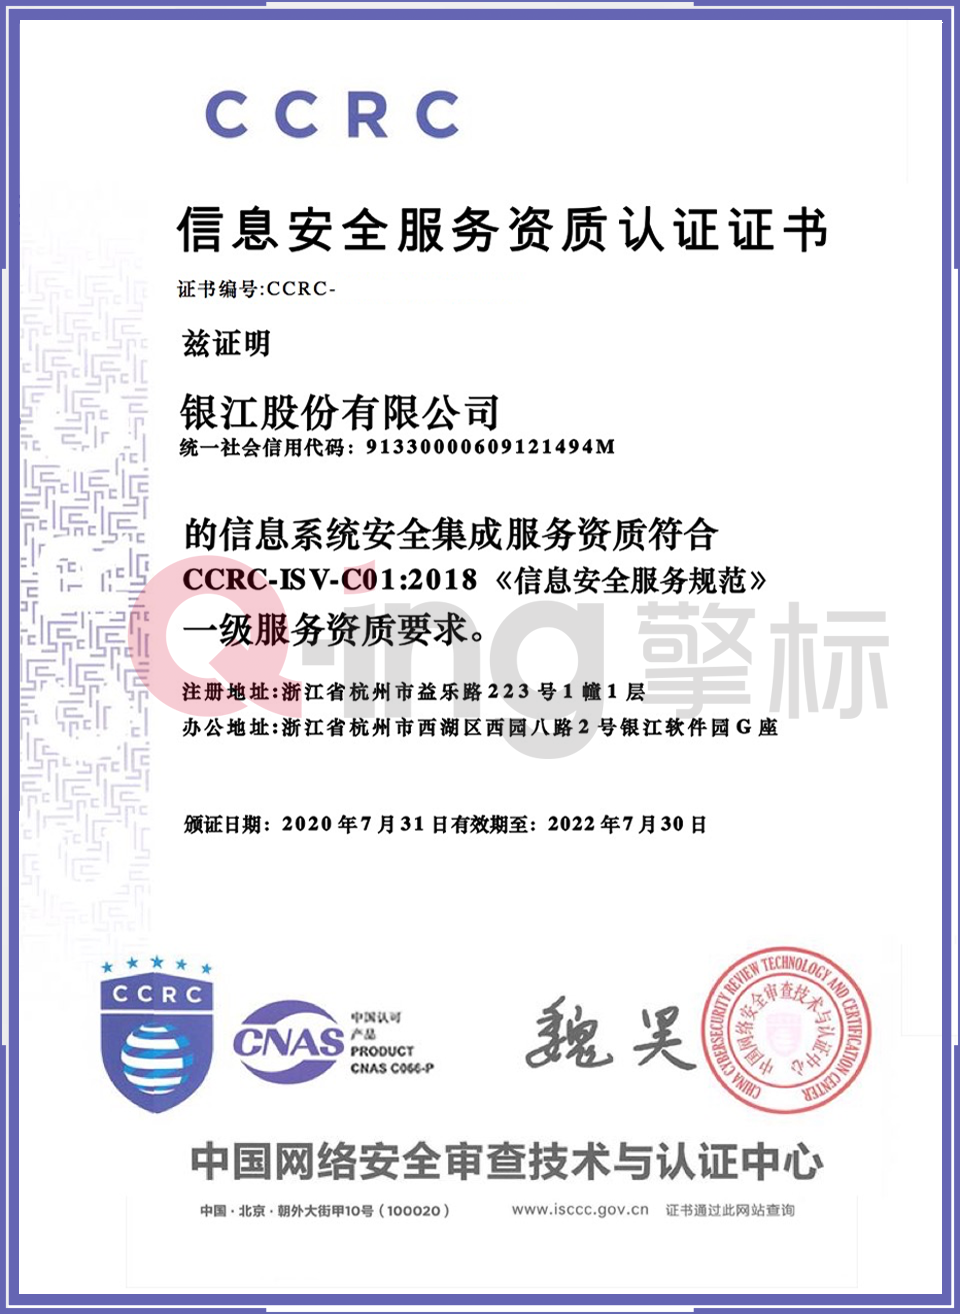 银江股份有限公司通过了中国网络安全审查技术与认证中心(简称ccrc)的